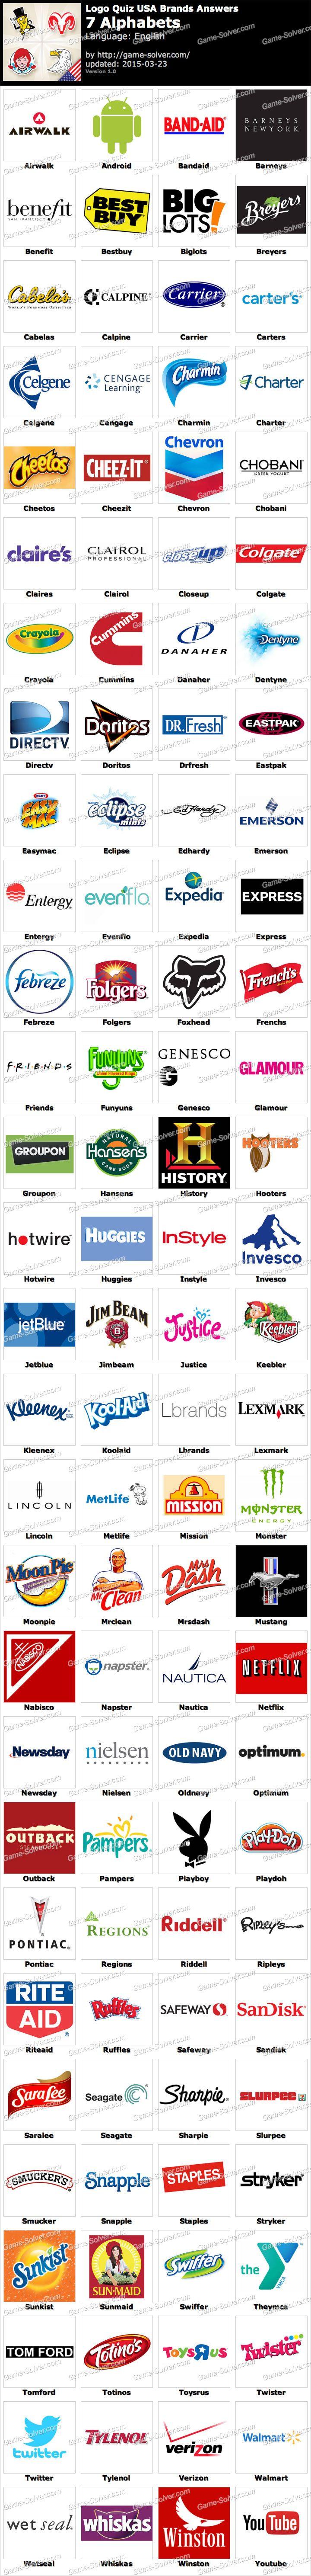 Alphabet Brands Logo - Logo Quiz USA Brands 7 Alphabets - Game Solver